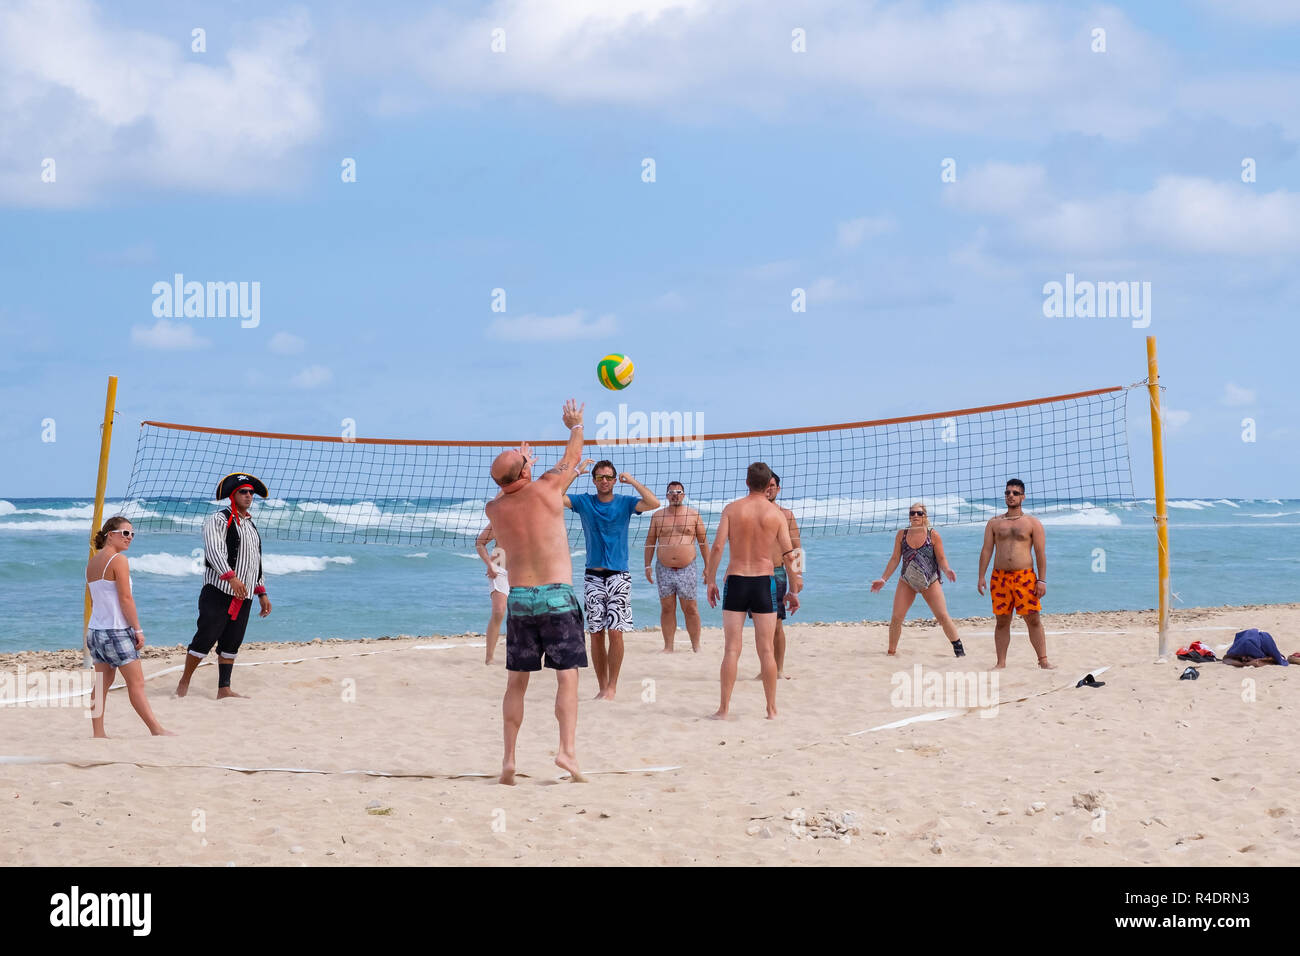 Tourist si impegnano in una partita di pallavolo sulla spiaggia a Playa Jibacoa a Cuba. Foto Stock